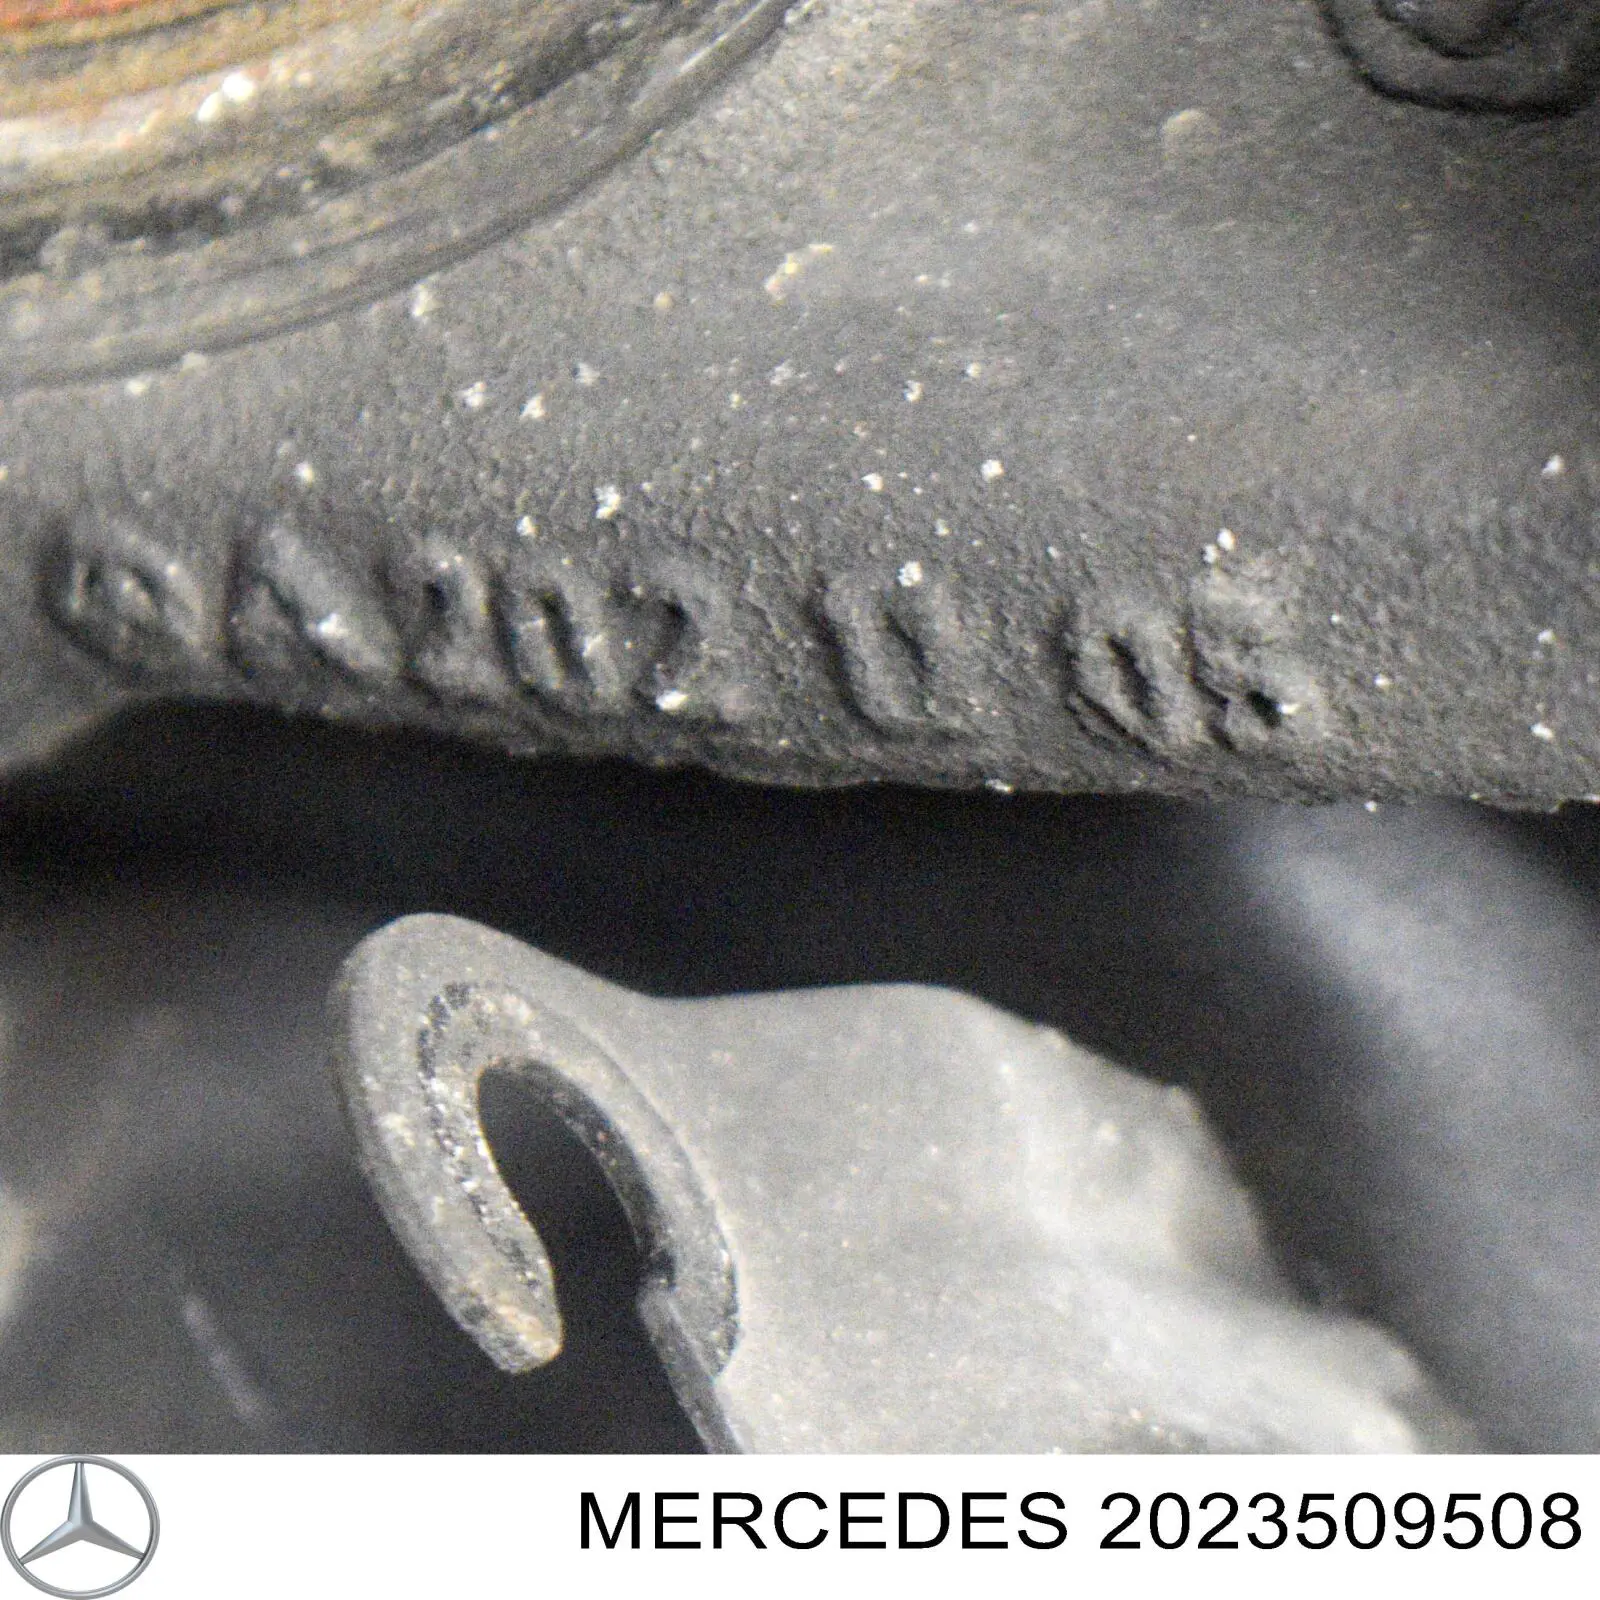 2023509508 Mercedes цапфа (поворотный кулак задний правый)